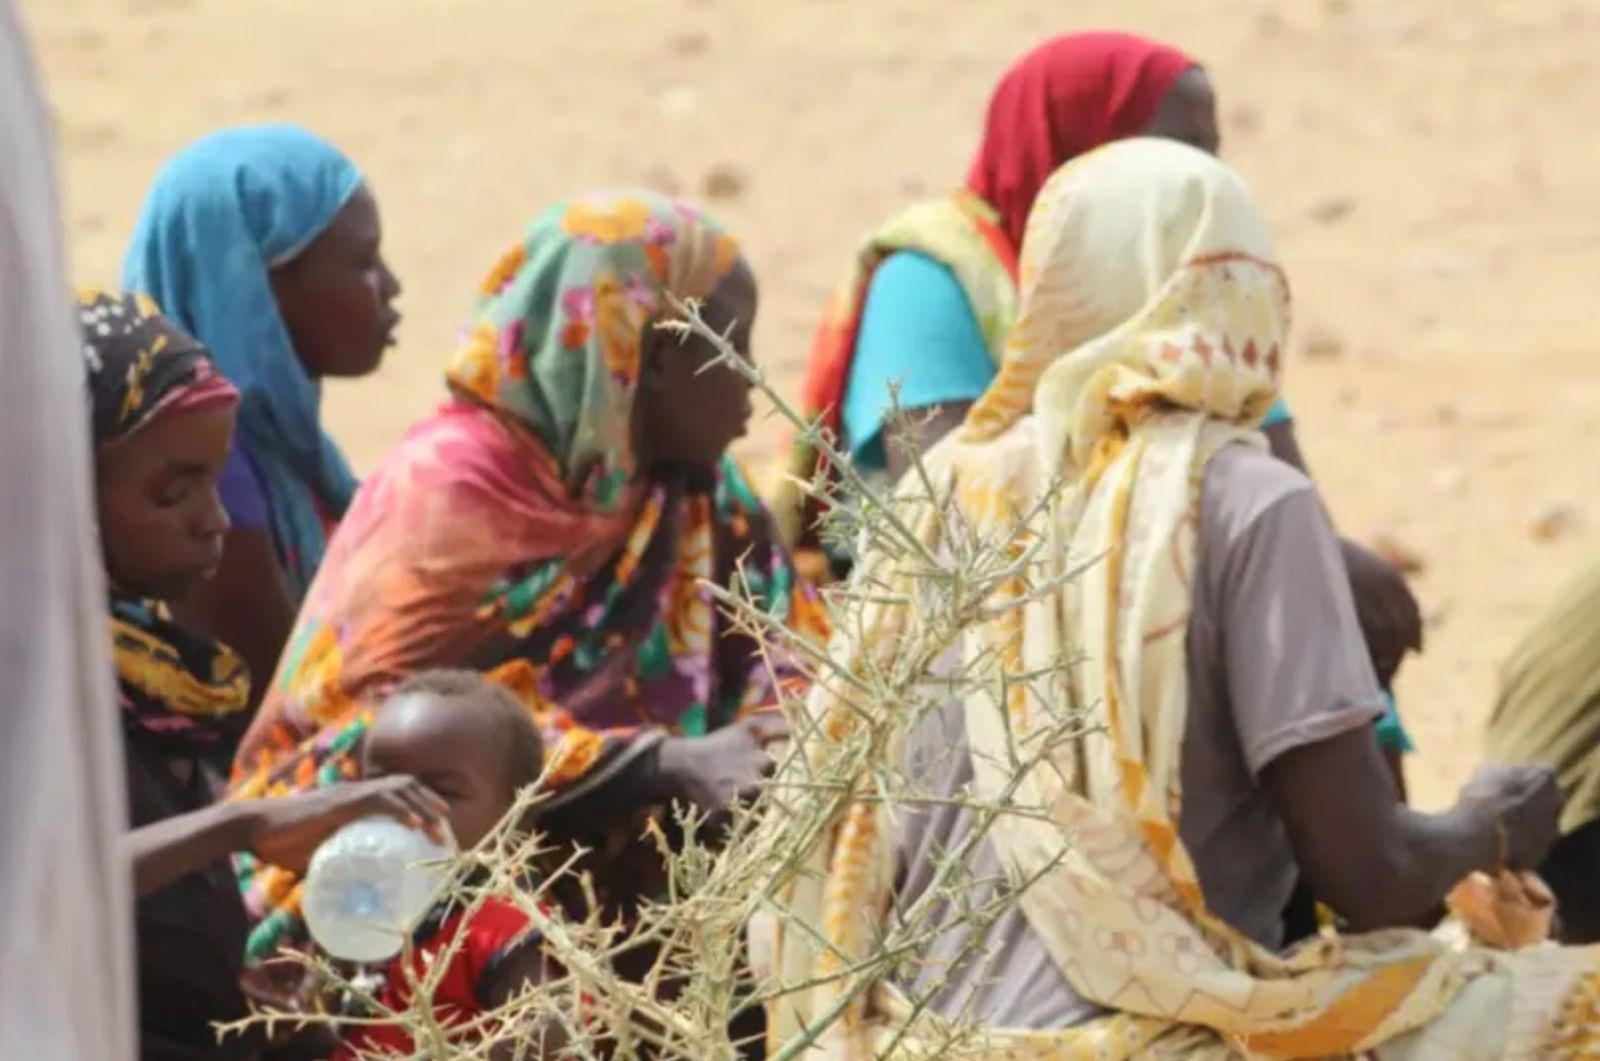 Le gouvernement japonais soutient l’UNICEF pour la réponse à la crise humanitaire générée par l’afflux de réfugiés soudanais dans l’est du Tchad